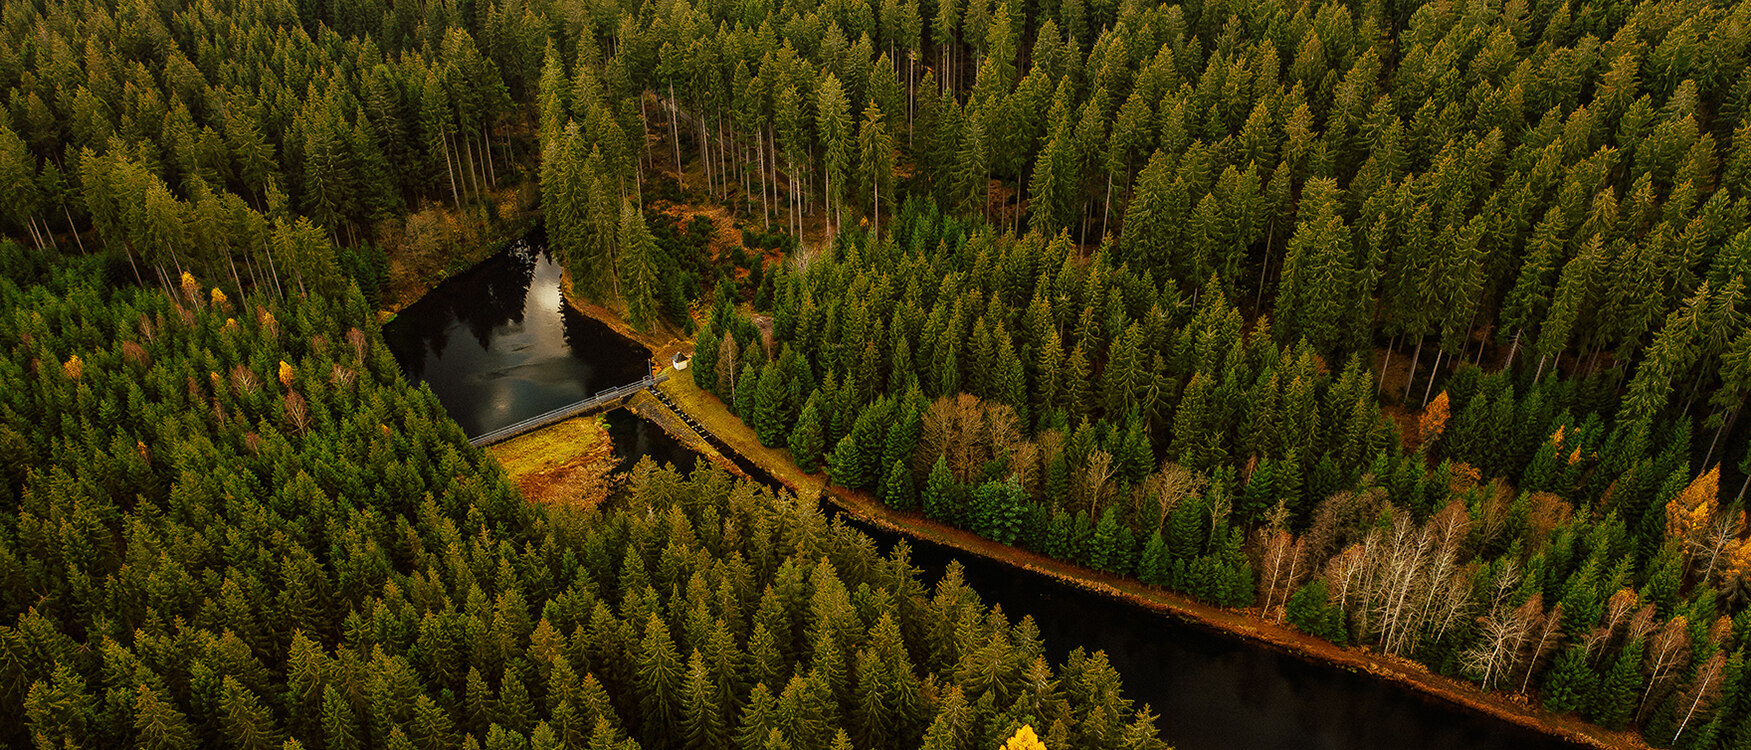 Luftbild vom Vorbecken Lautenbach, umgeben von viel Wald